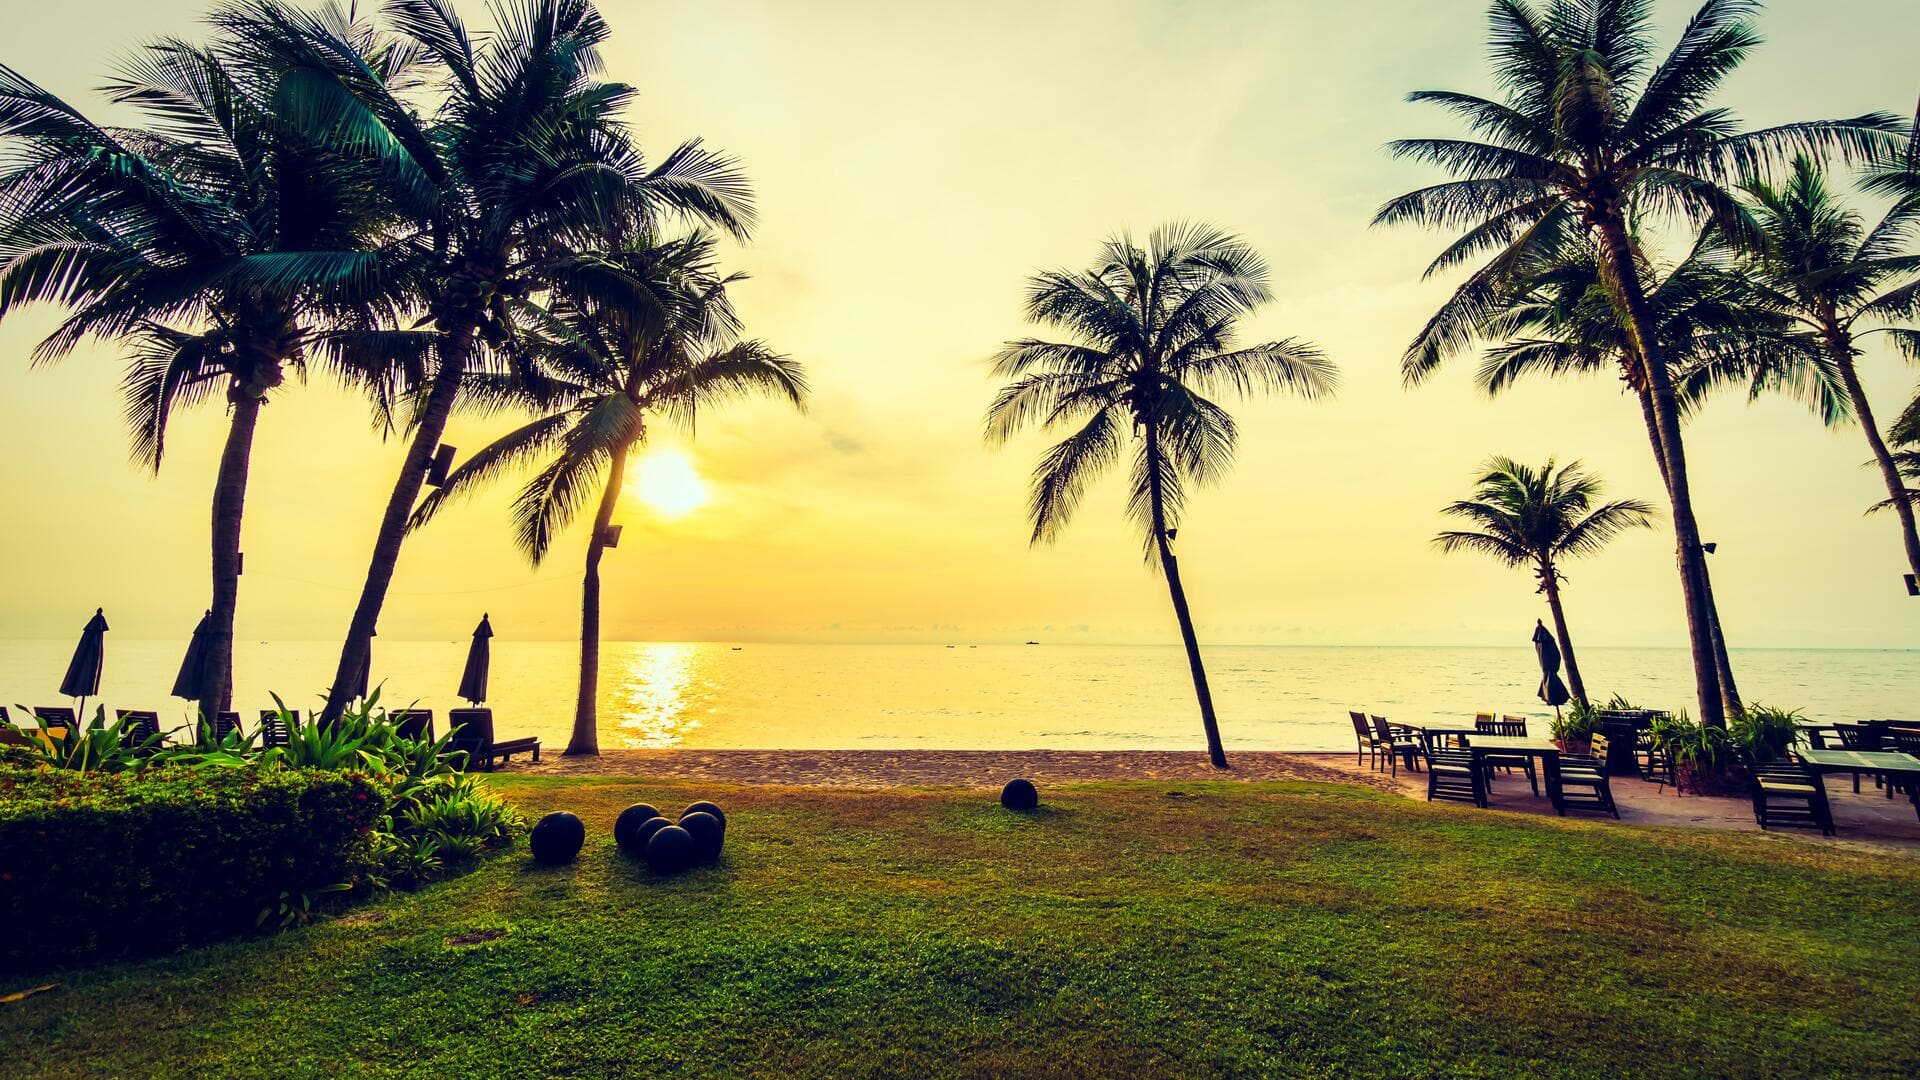 केरल के वायनाड में स्थित हैं ये 5 खूबसूरत पर्यटन स्थल, छुट्टियों में घूम आएं